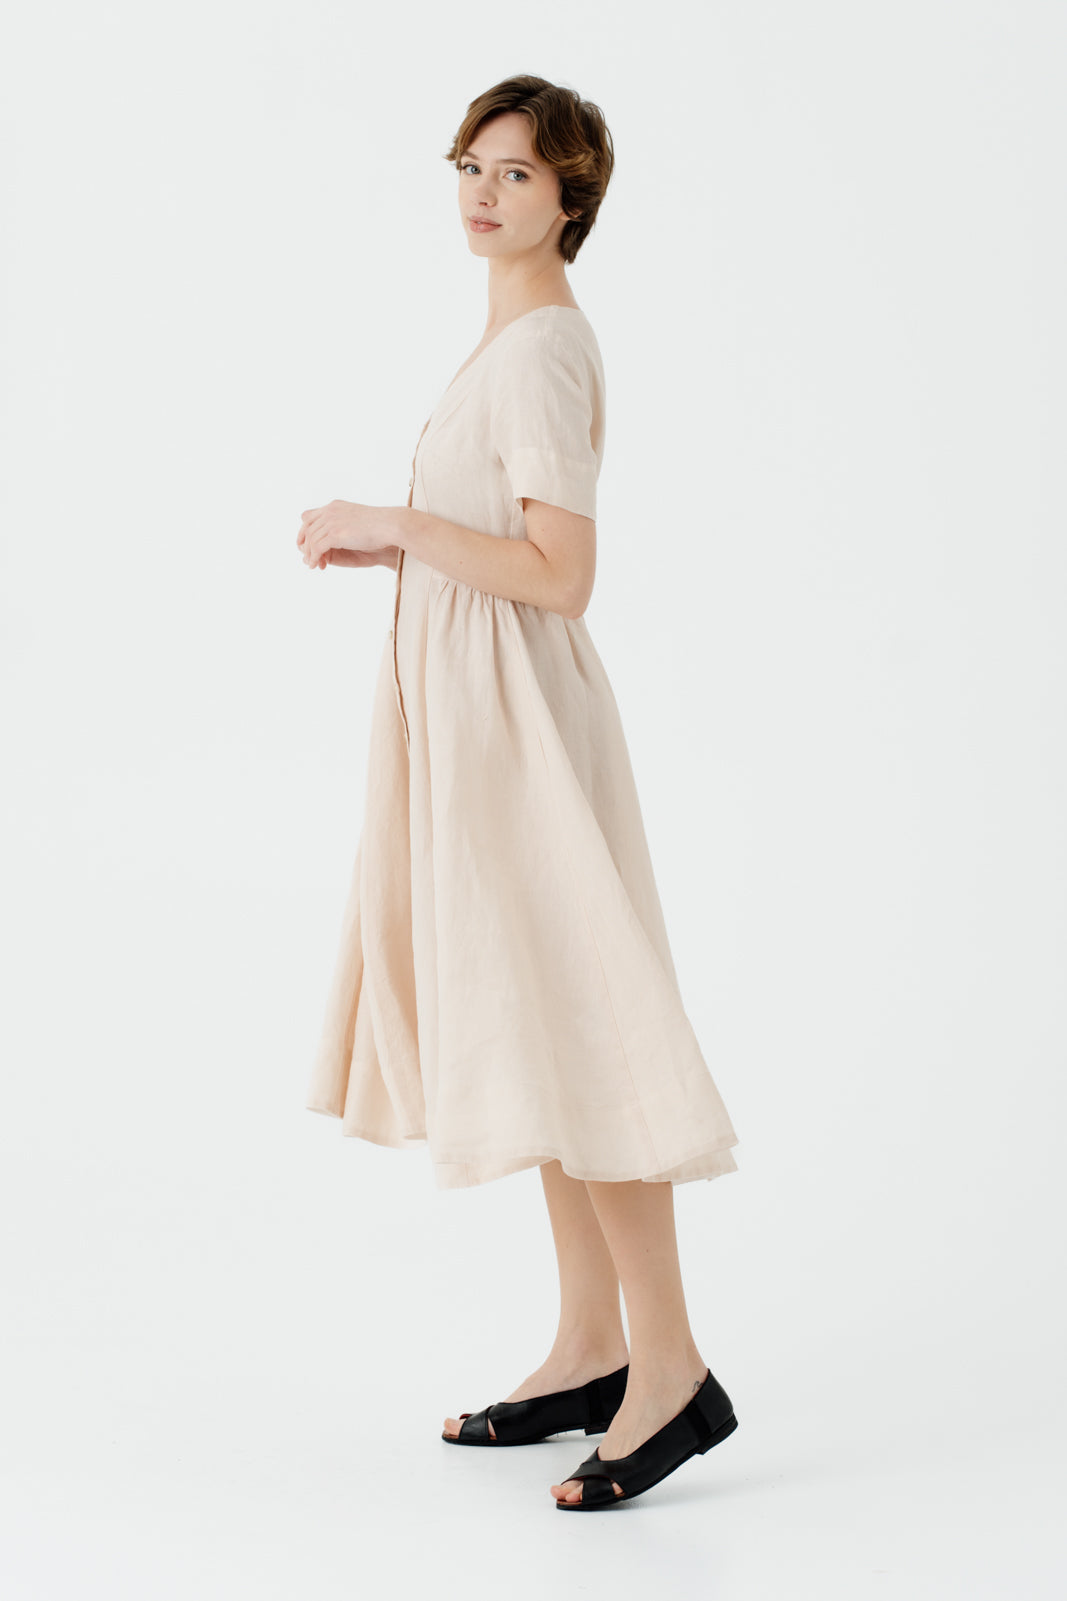 Agness Dress, Short Sleeve, Seashell White